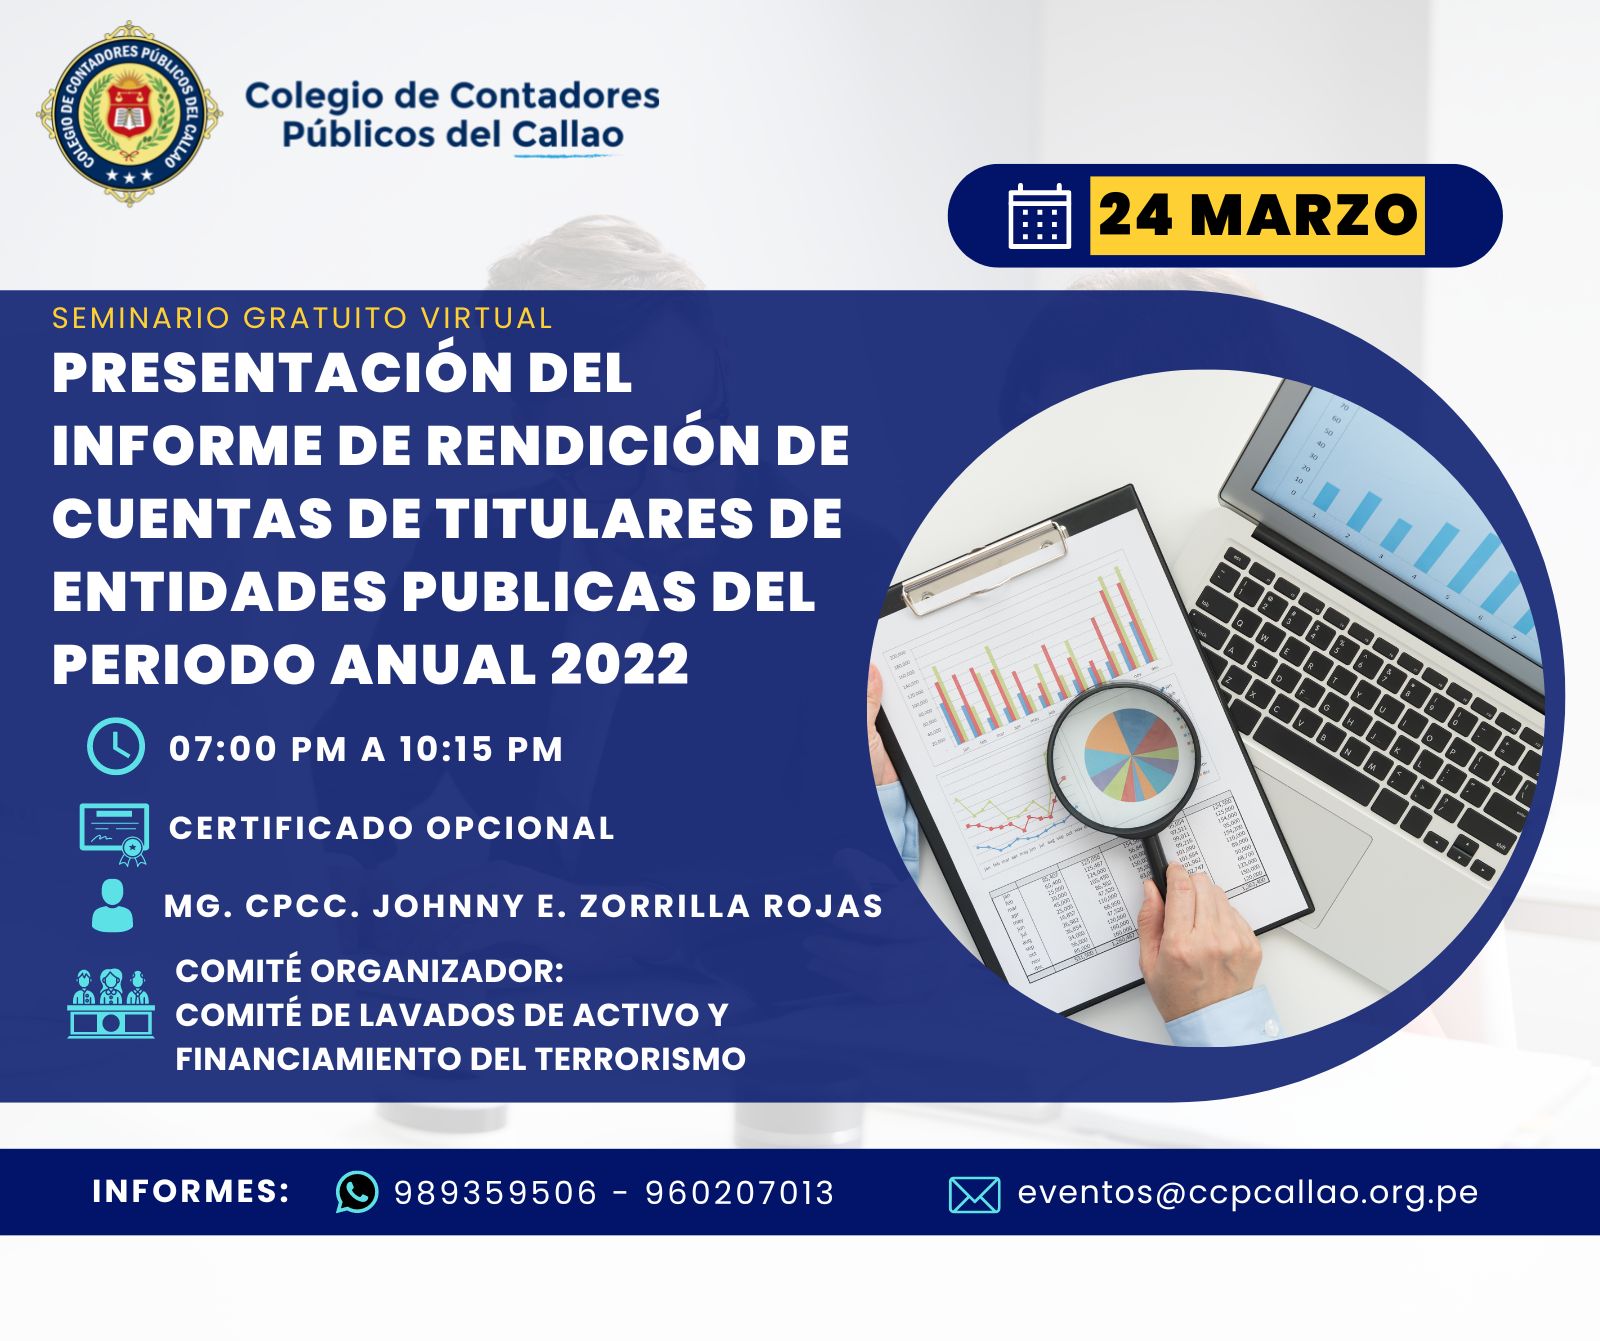 SEMINARIO GRATUITO VIRTUAL : PRESENTACIÓN DEL INFORME DE RENDICIÓN DE CUENTAS DE TITULARES DE ENTIDADES PUBLICAS DEL PERIODO ANUAL 2022